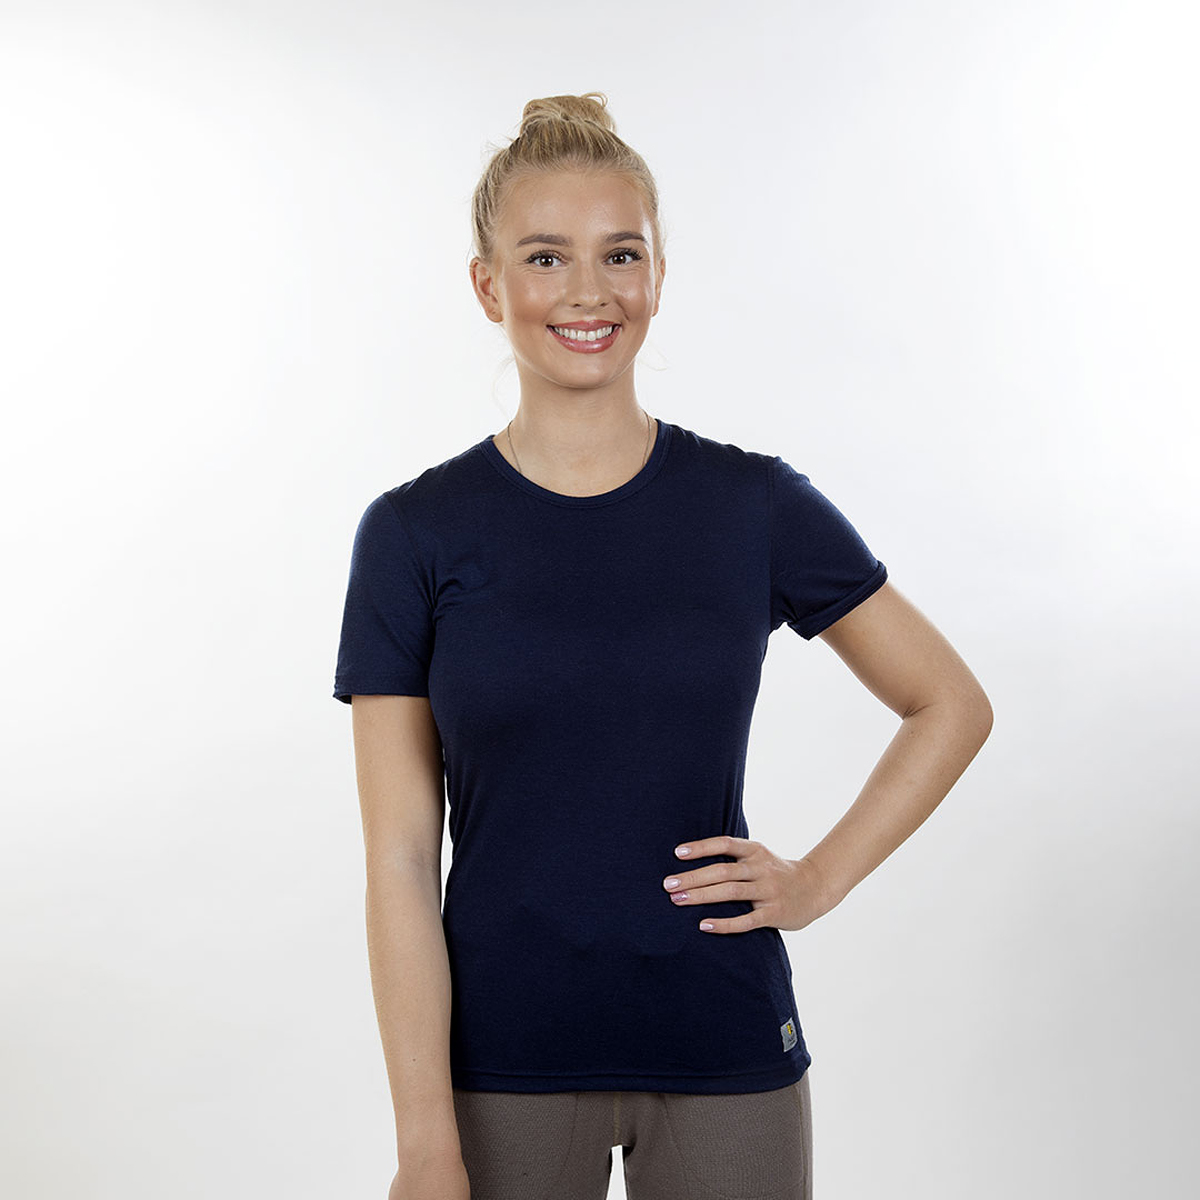 Janus Lightwool t-shirt 100% merinoull dam marinblå